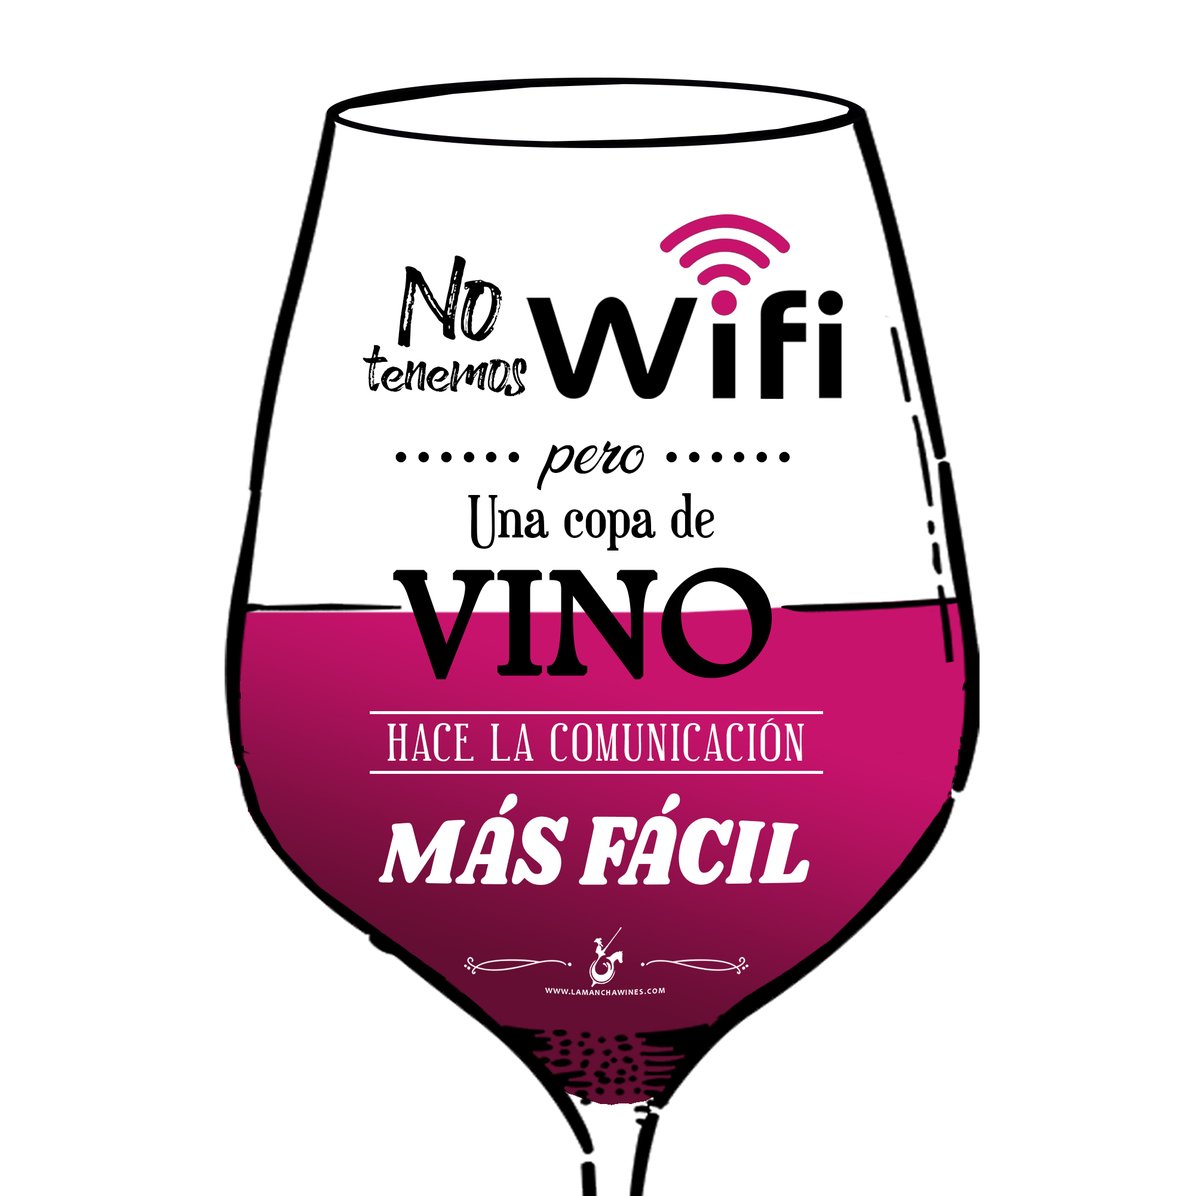 No tenemos #WIFI pero una copa de vino hace la comunicación 🎙 más fácil 🍷
.
Vamos a por el primer fin de semana de mayo con muy buen humor ✅
.
#vinodelamancha #vinoyhumor #DOLaMancha #winelover #vinosdecalidad #vinosdealbacete #vinosdeciudadreal #vinosdecuenca #vinosdetoledo